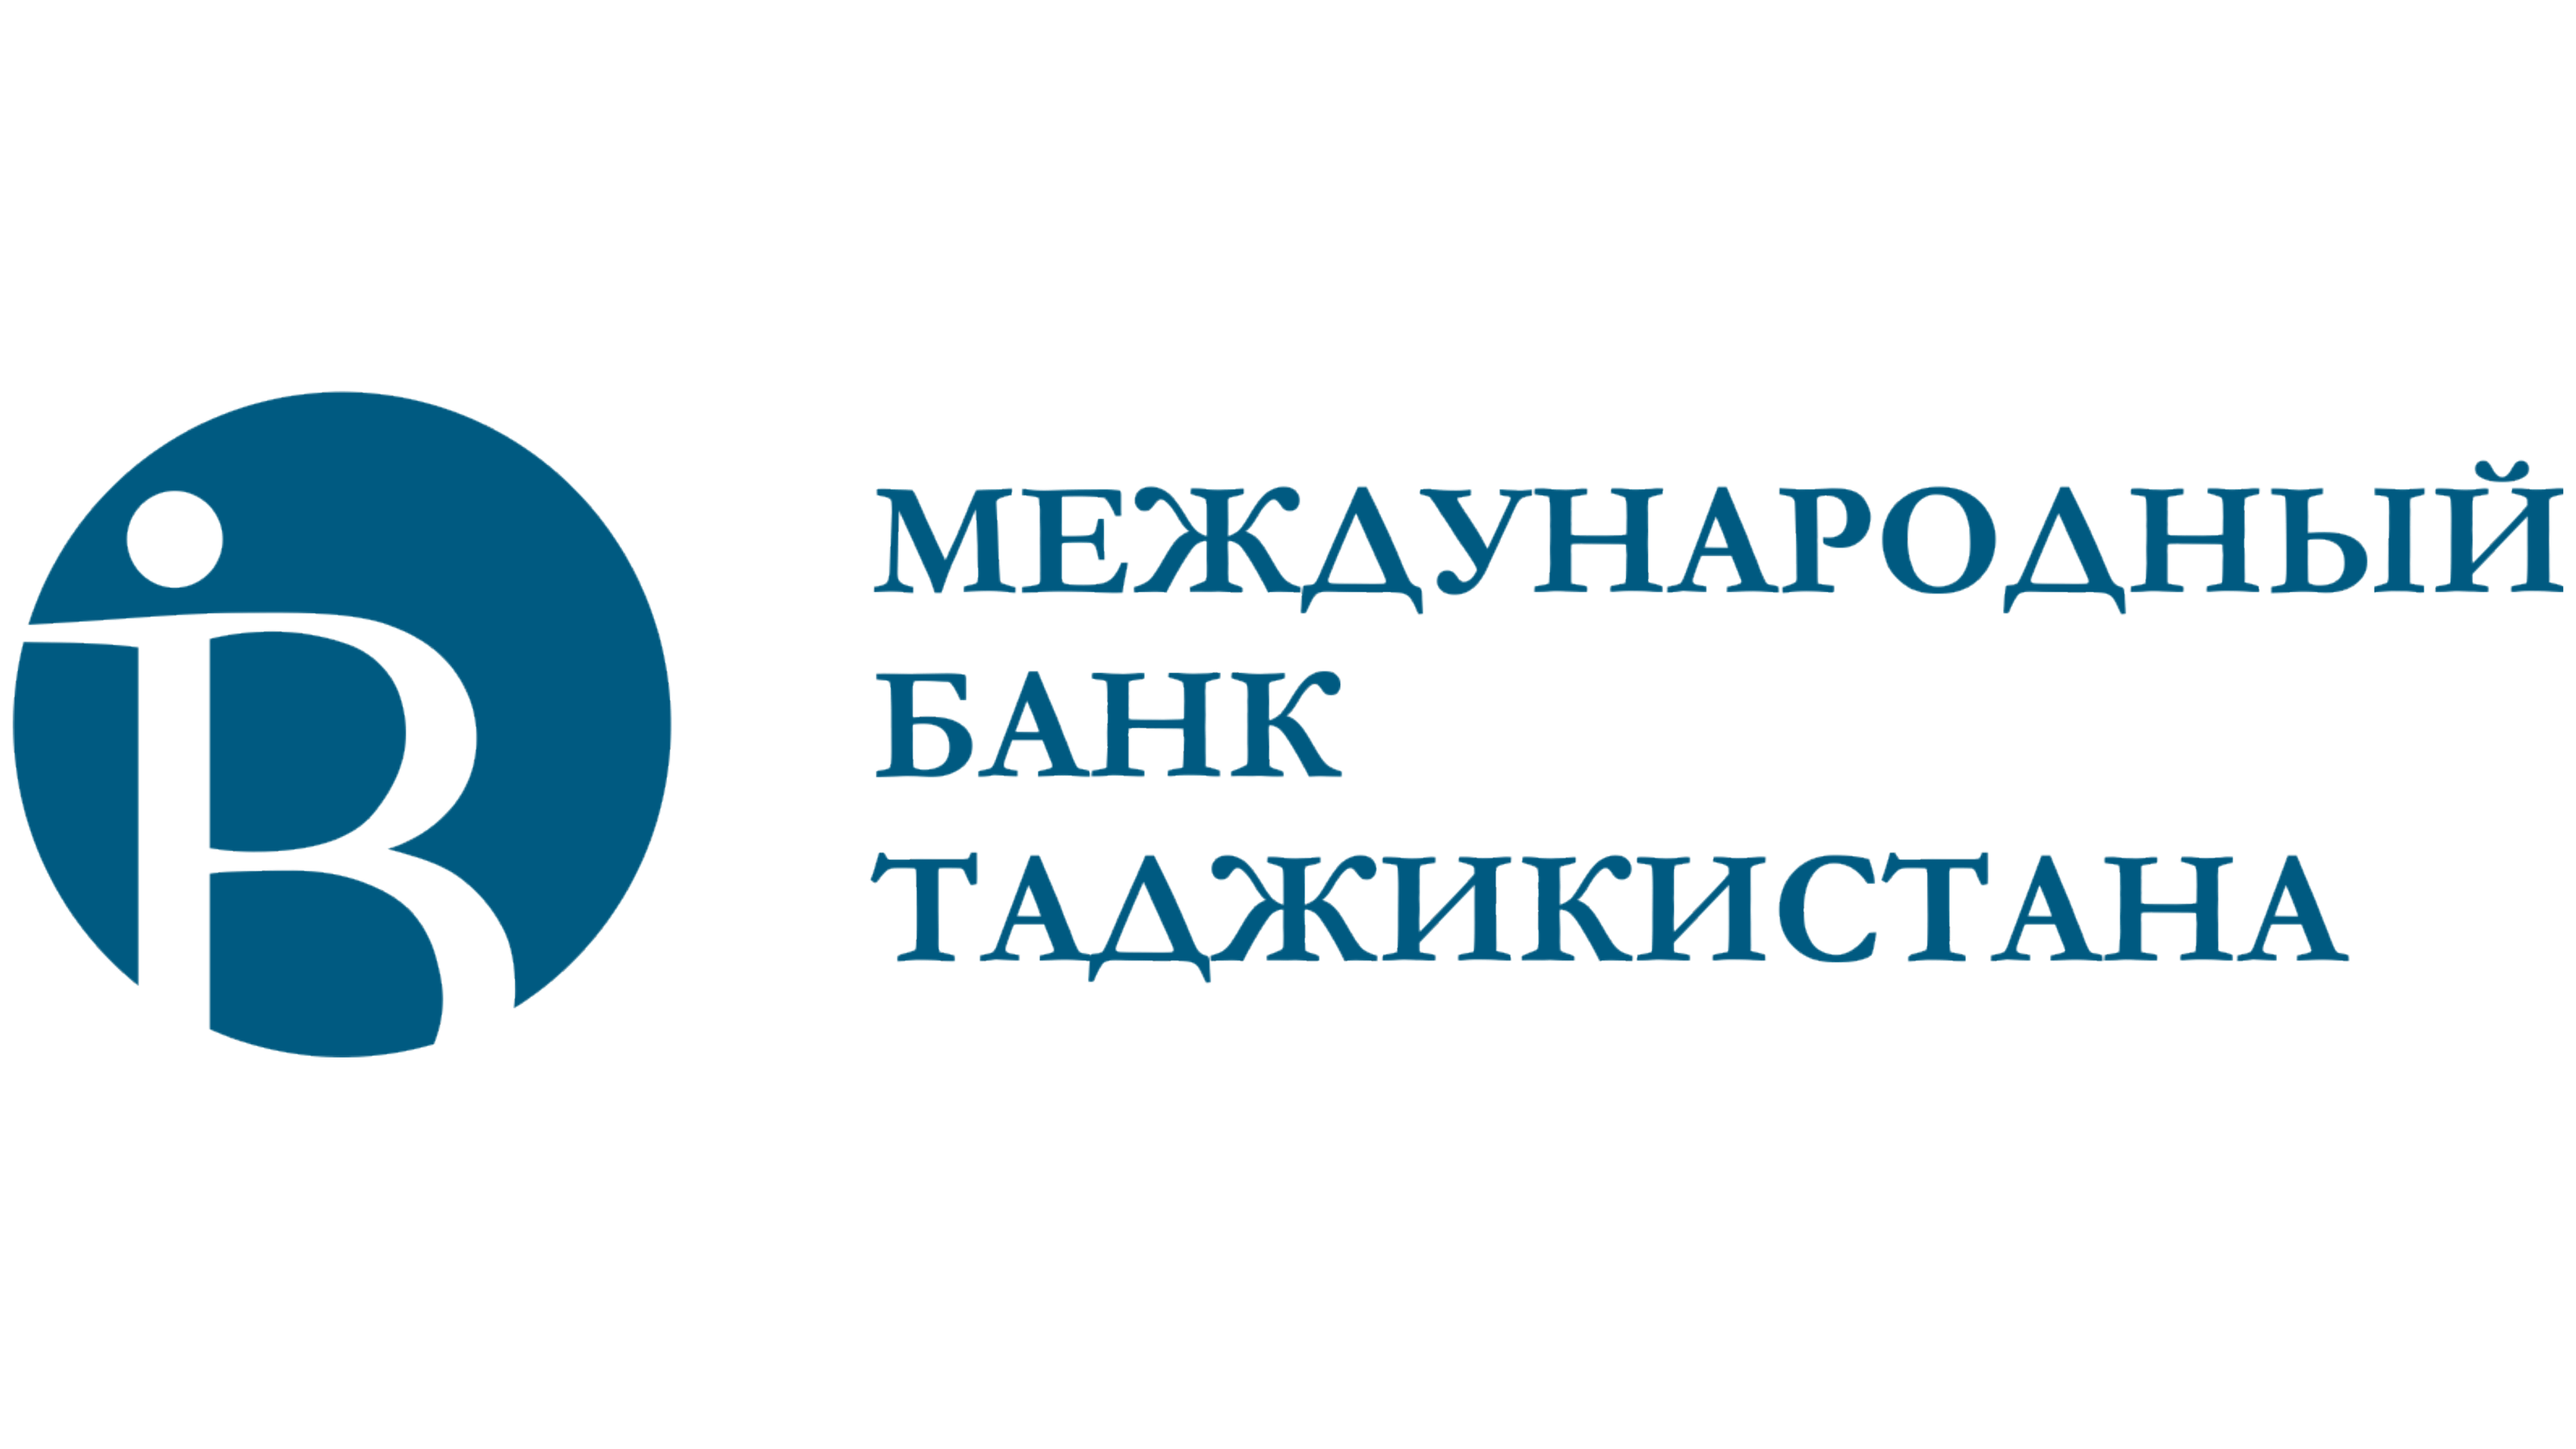 Международный таджикский банк. Международный банк Таджикистана карта. Логотип международного банка Таджикистана.